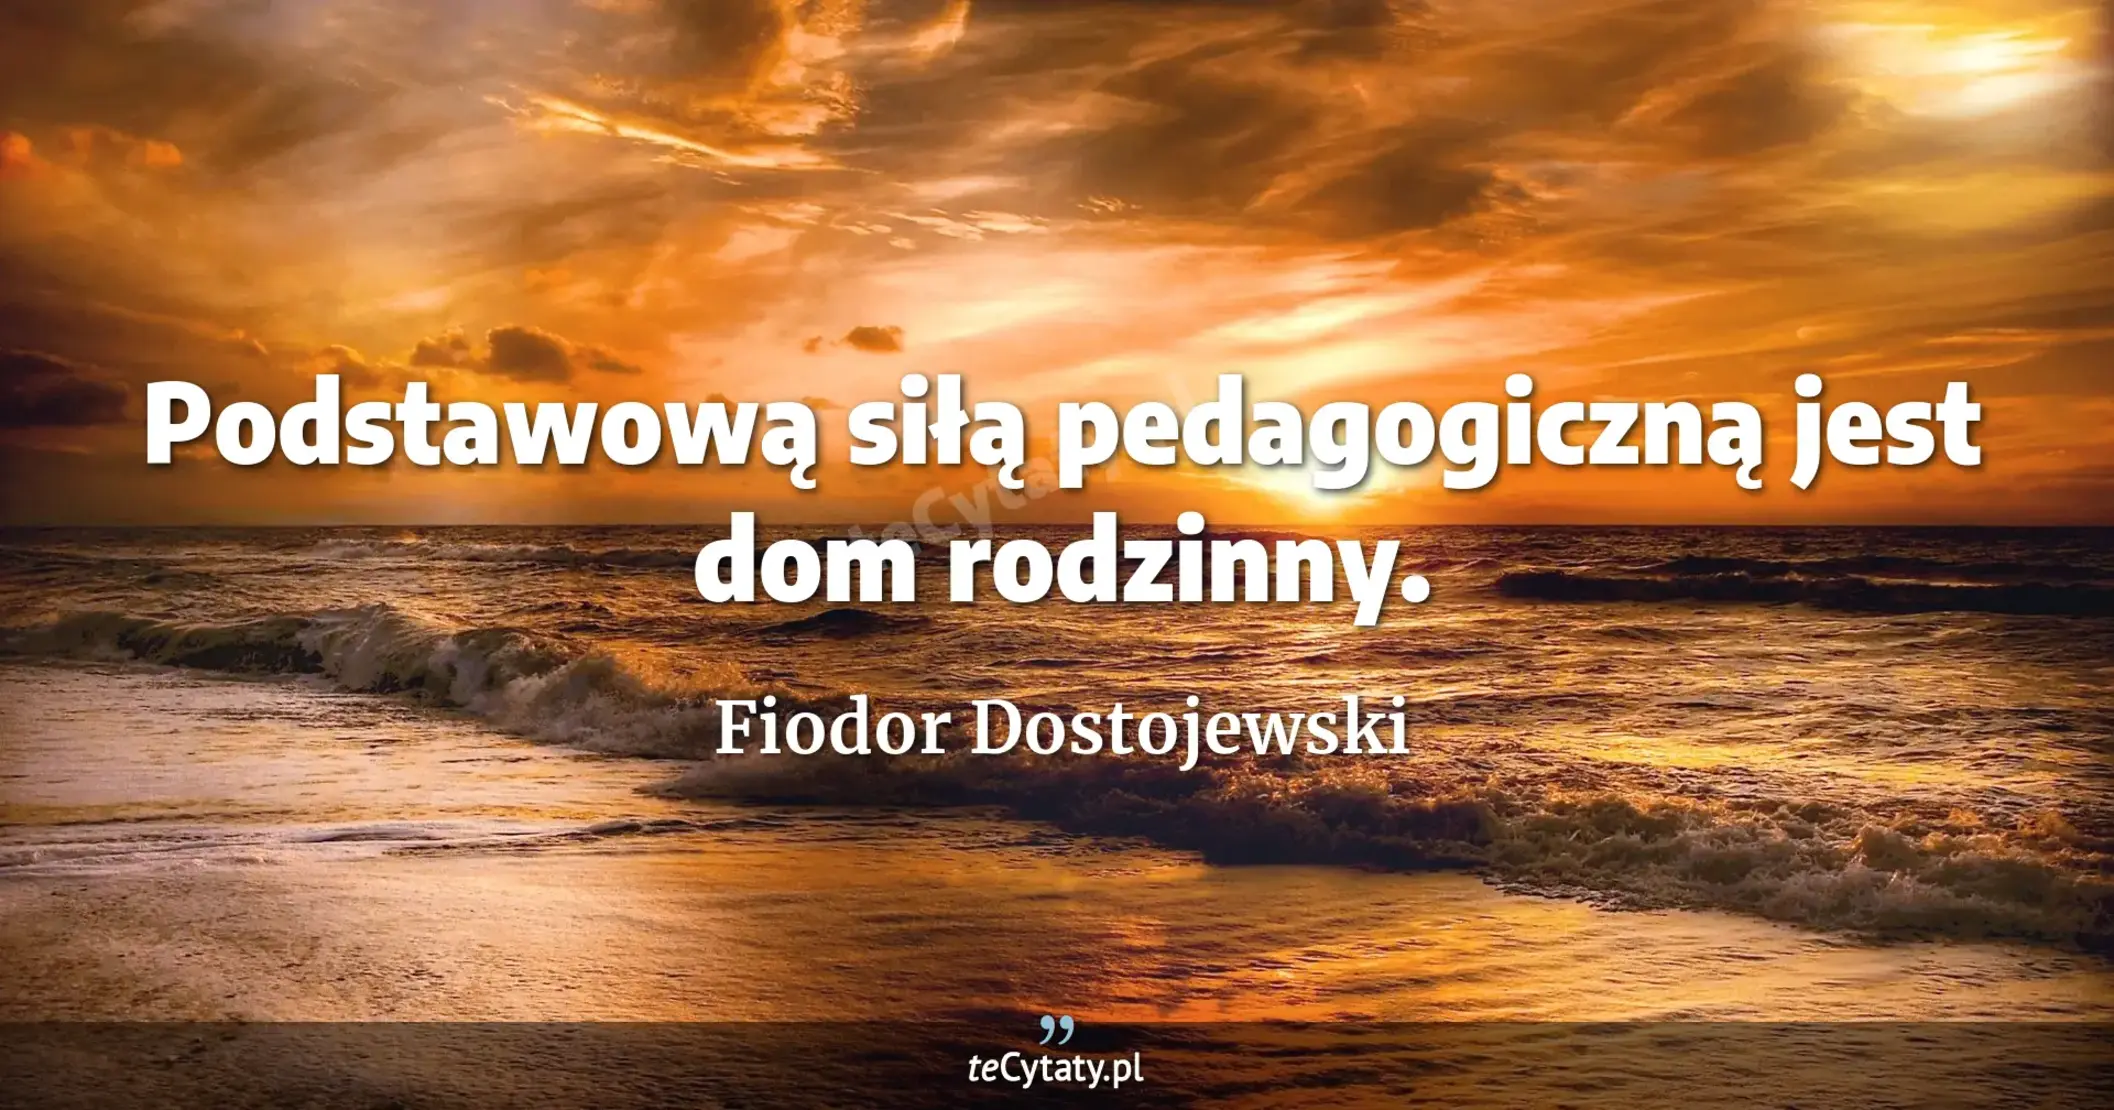 Podstawową siłą pedagogiczną jest dom rodzinny. - Fiodor Dostojewski